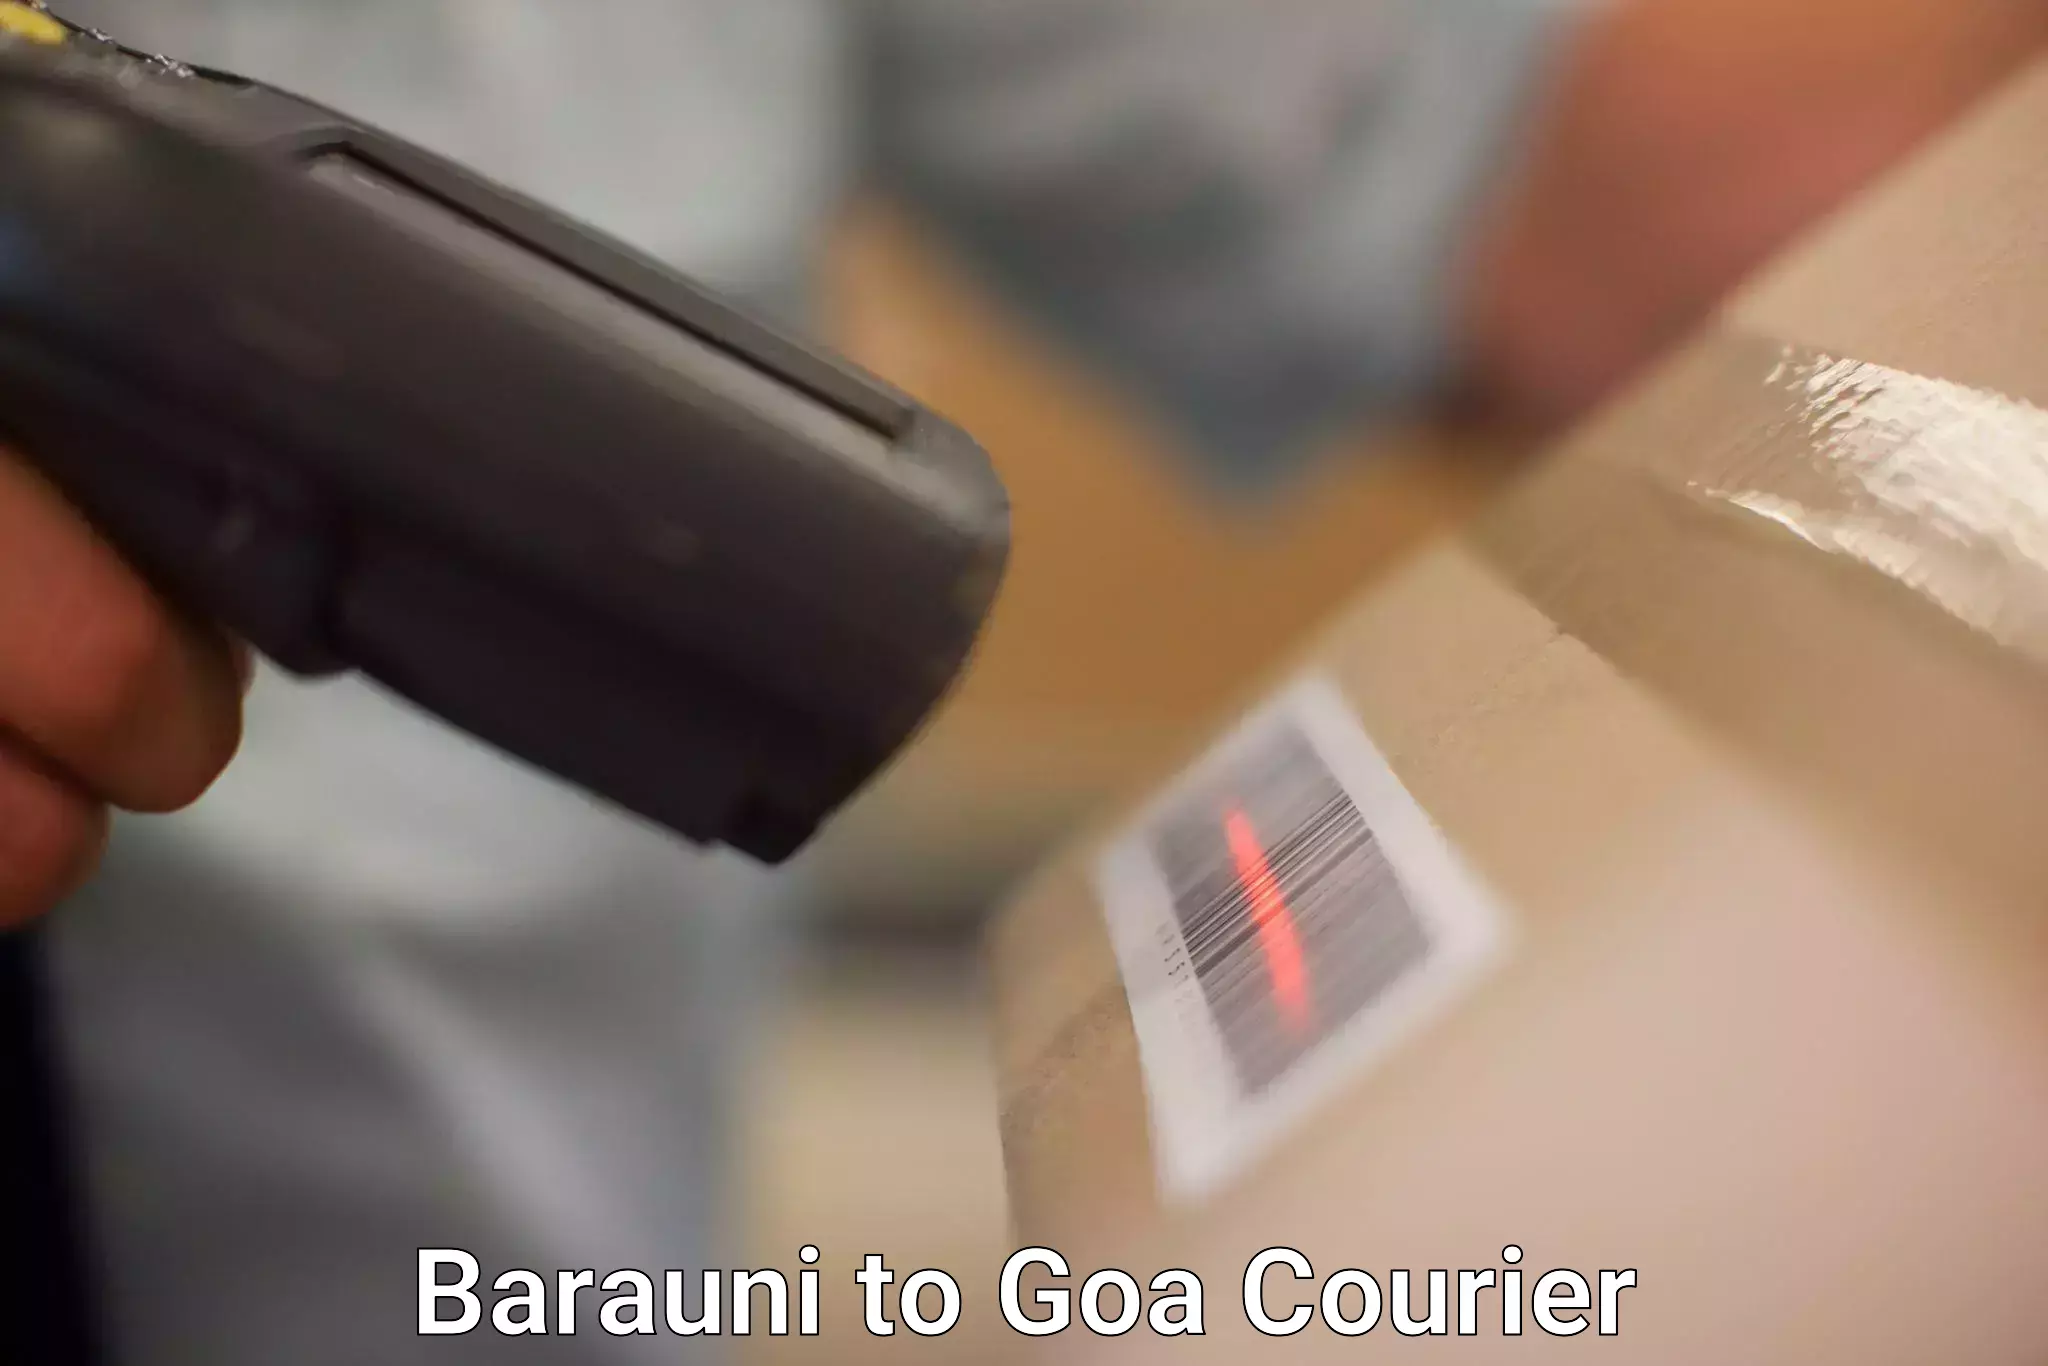 Customer-centric shipping Barauni to Bardez